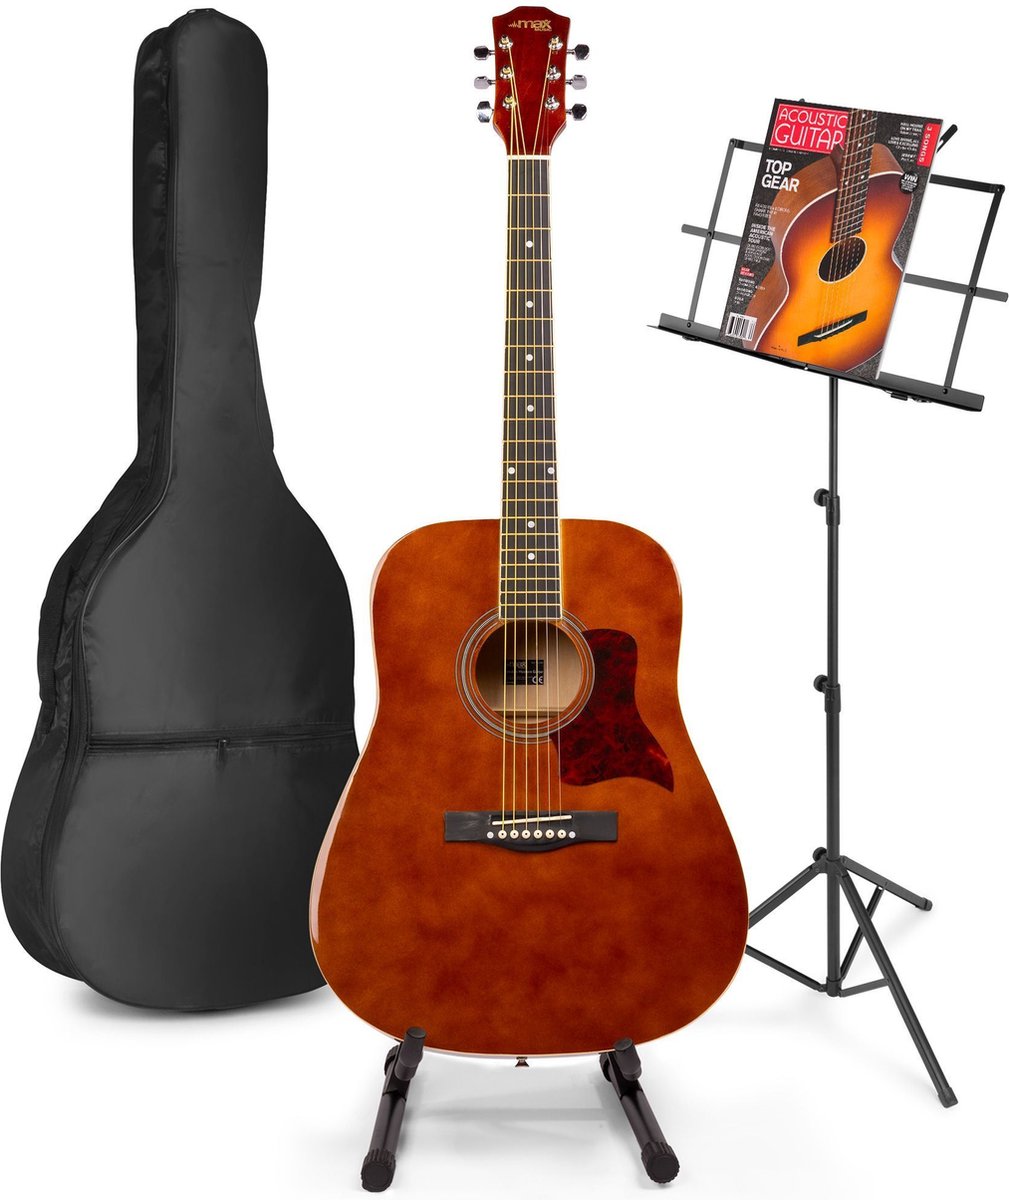 Akoestische gitaar voor beginners - MAX SoloJam Western gitaar - Incl. gitaar standaard, muziekstandaard, gitaar stemapparaat, gitaartas en 2x plectrum - Bruin (hout)